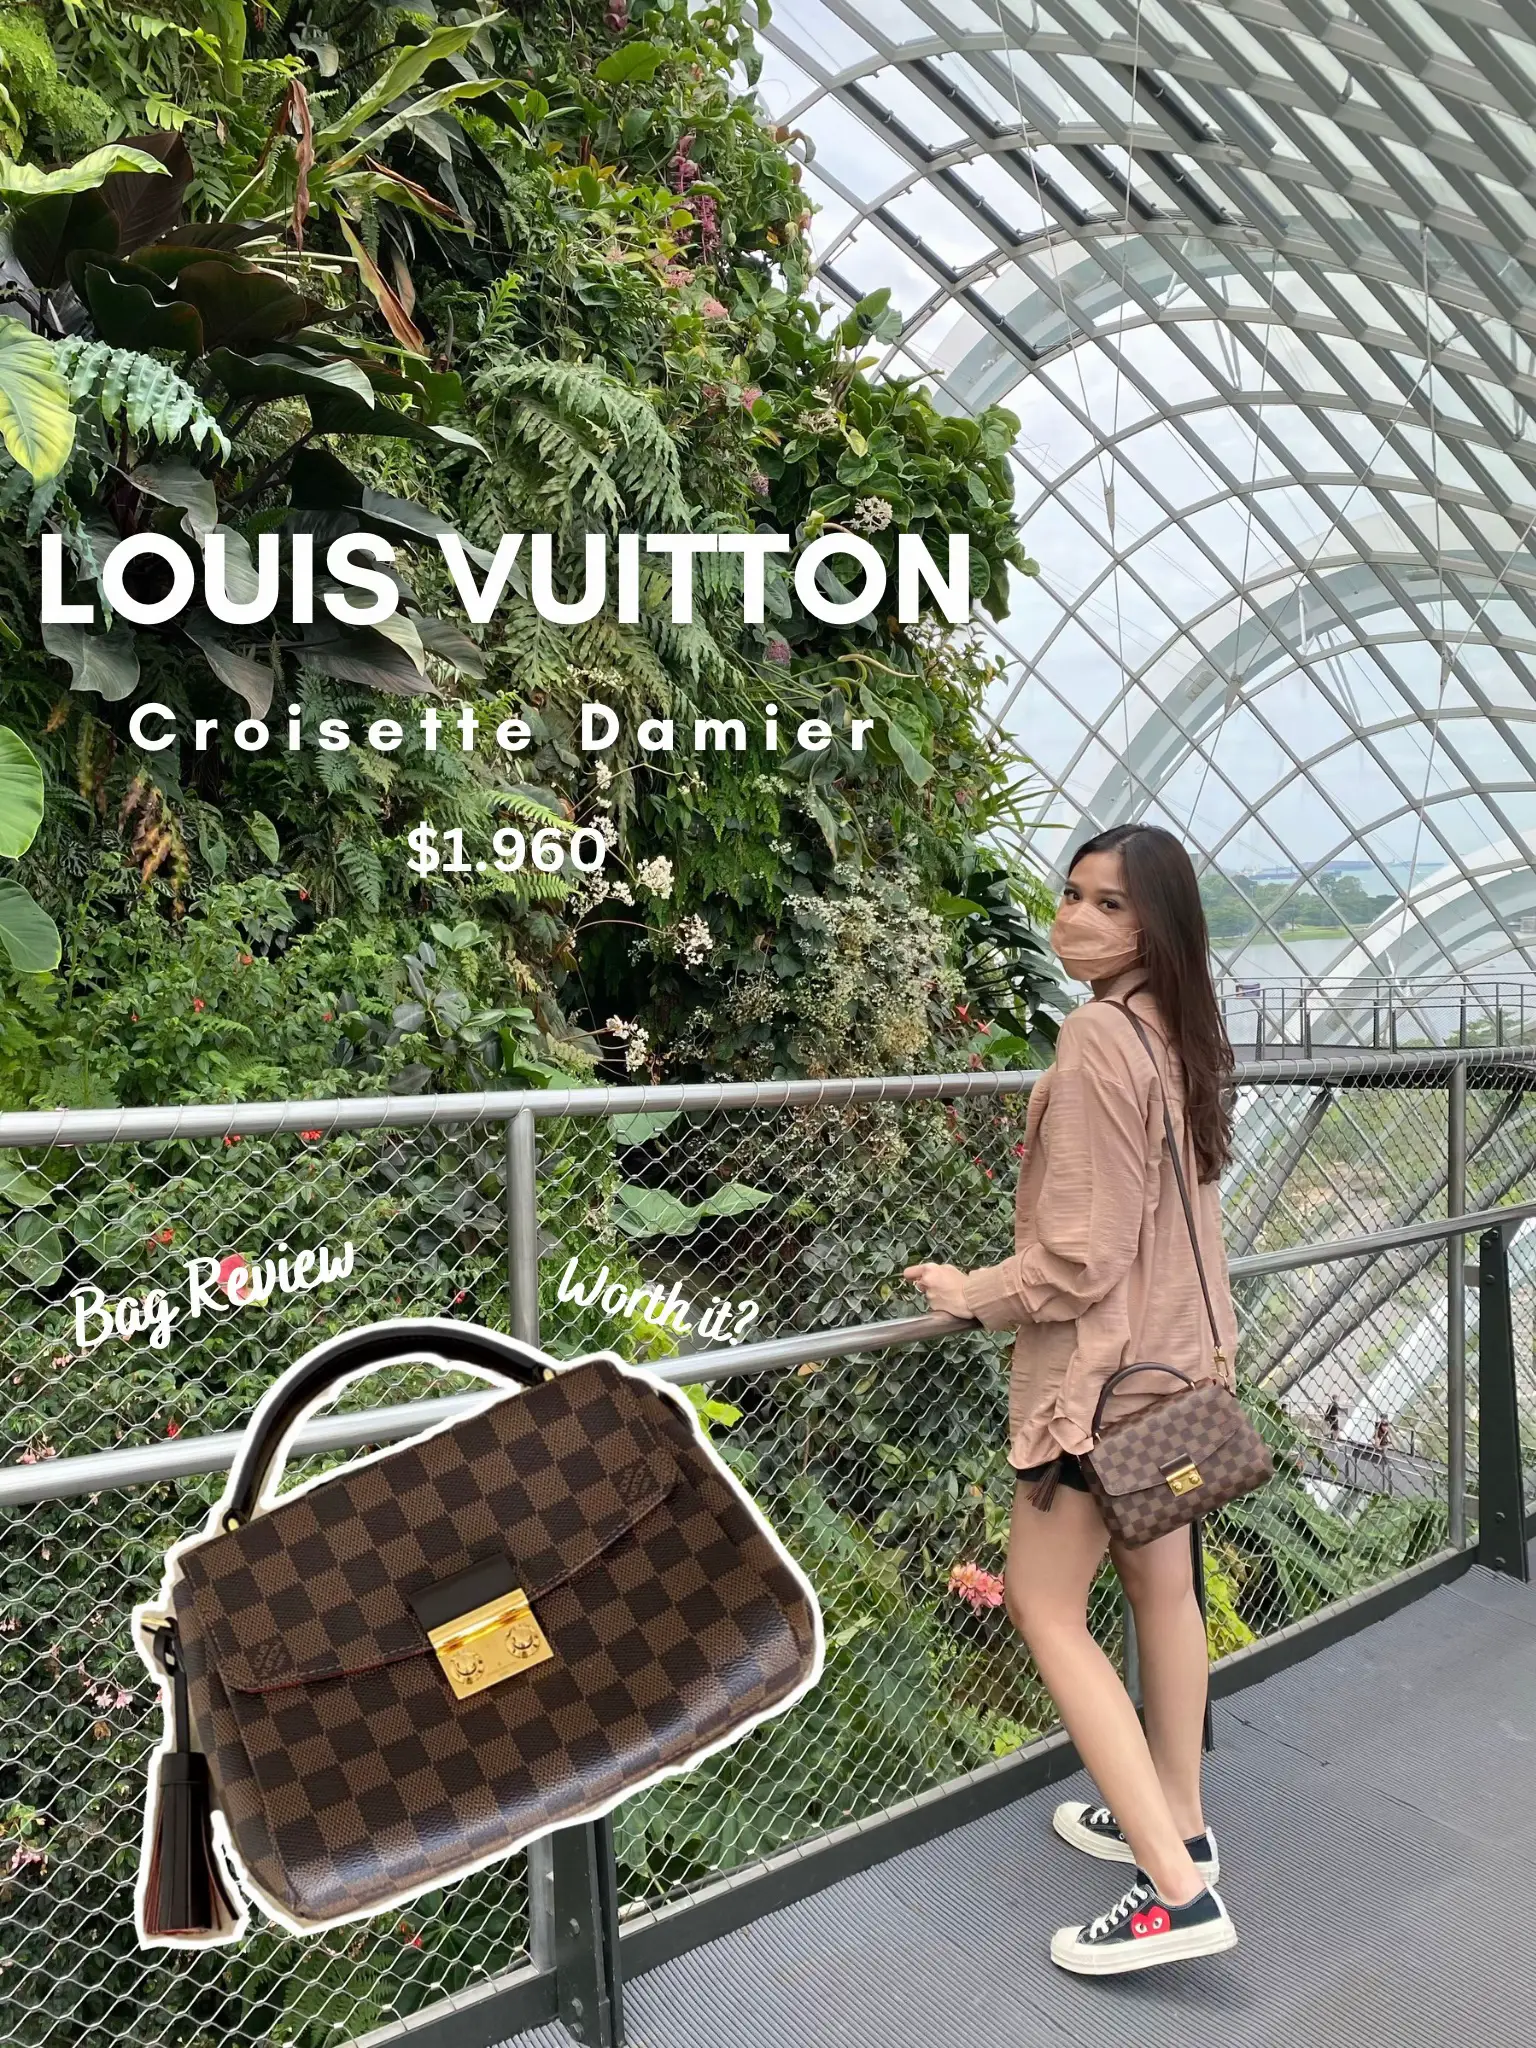 Louis Vuitton croisette outfits